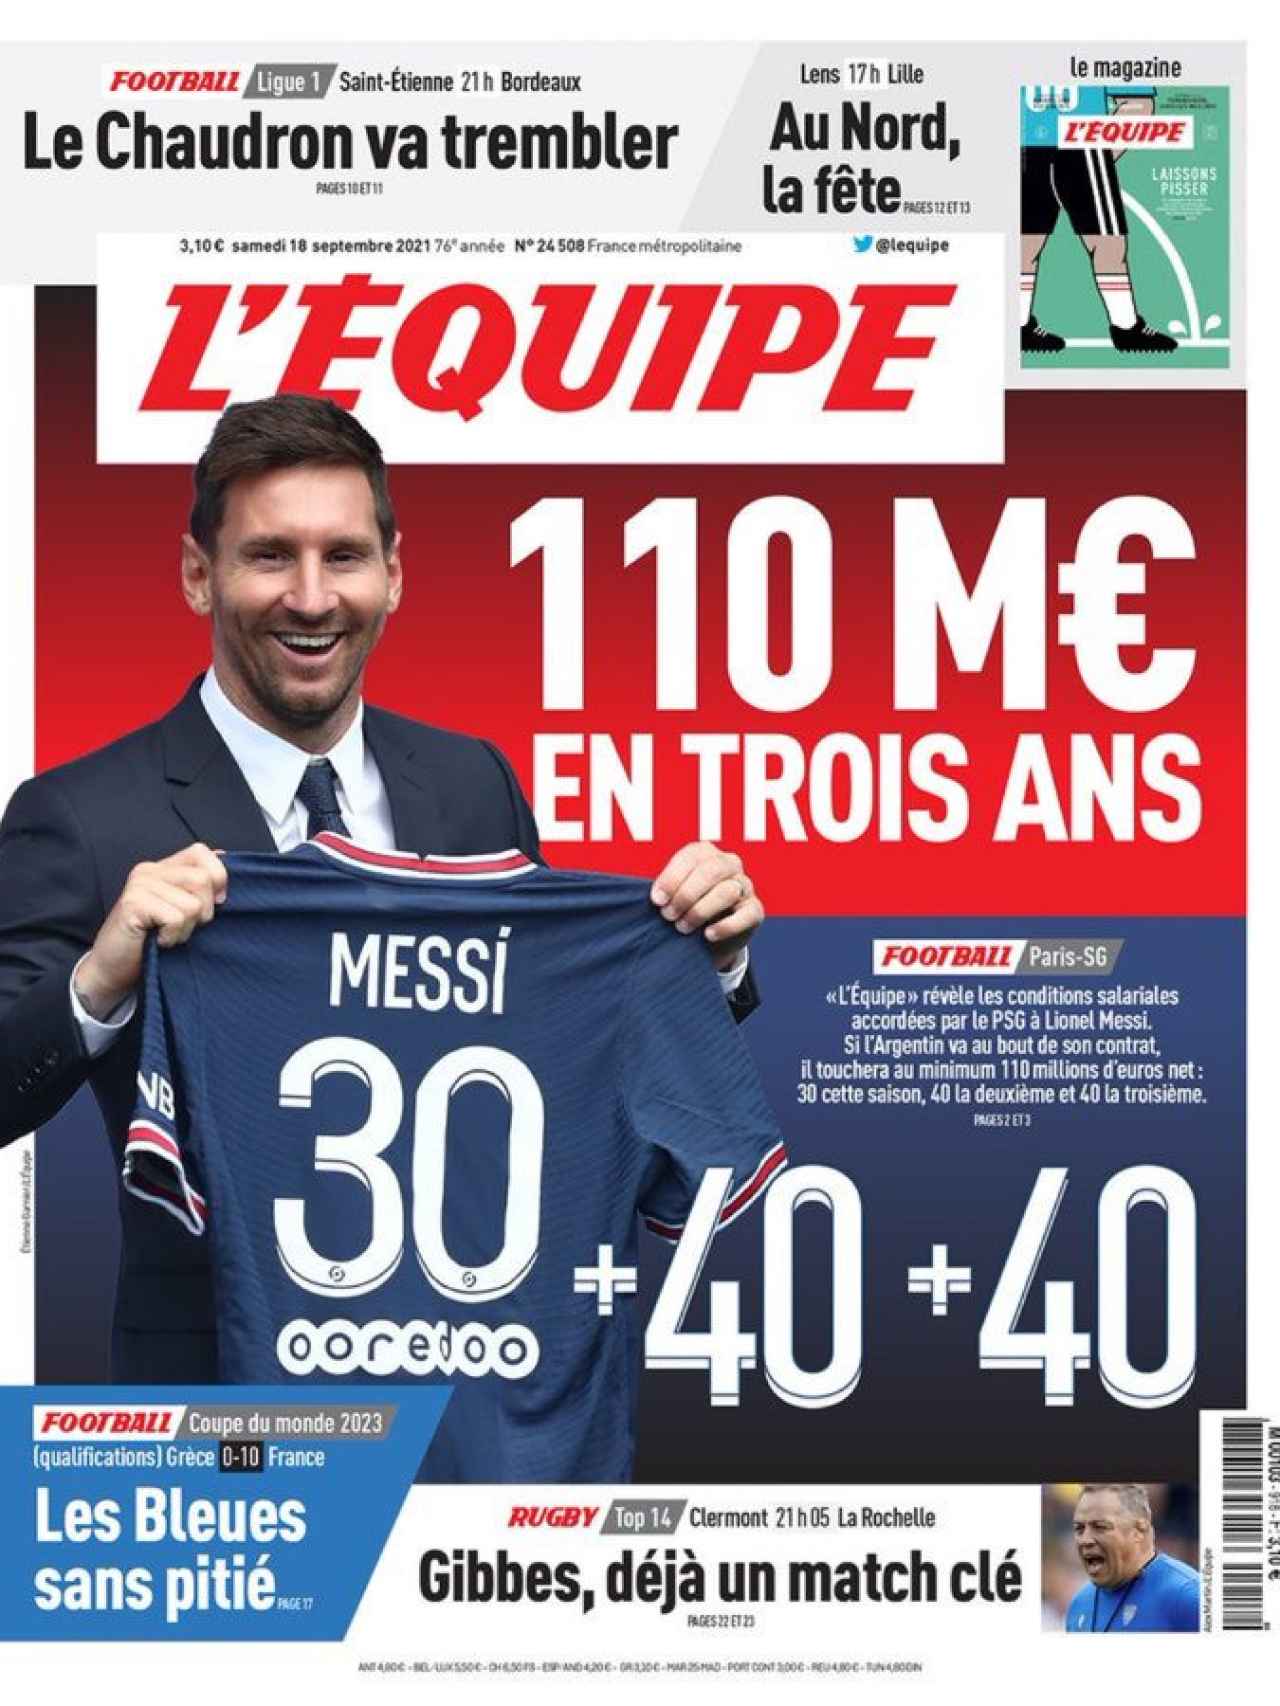 La portada del diario L'Equipe (18/09/2021)